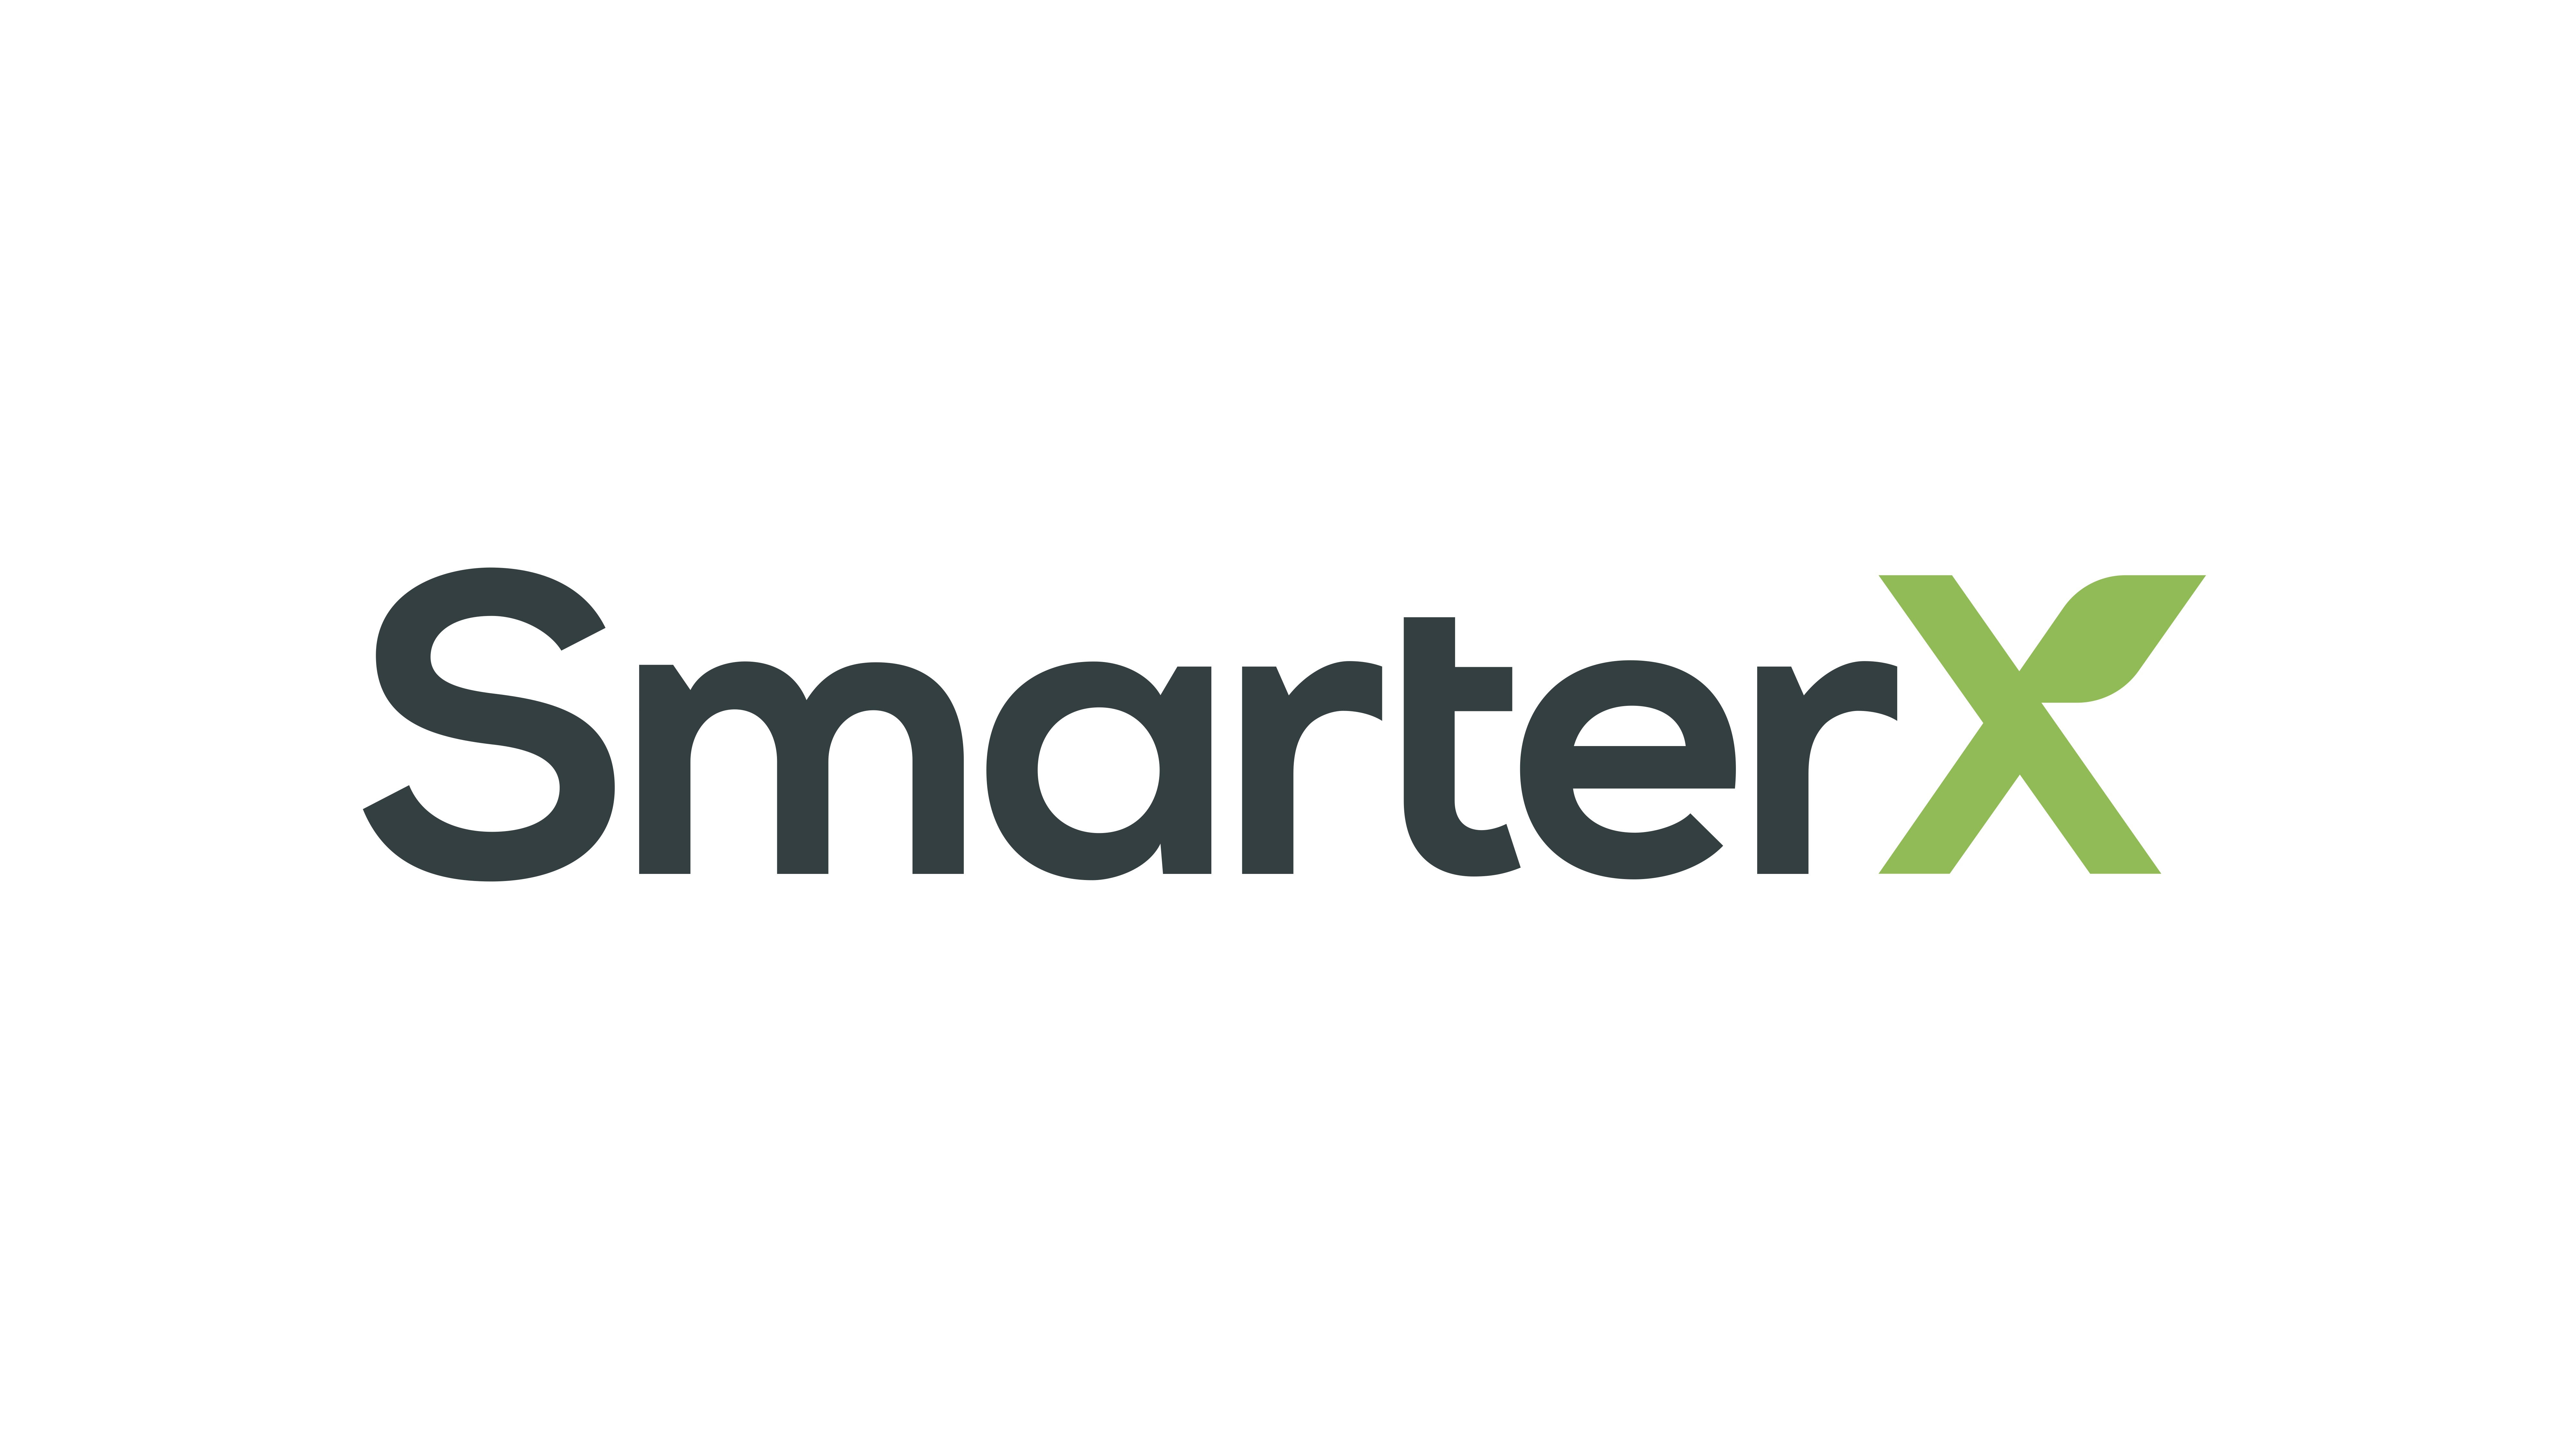 SmarterX